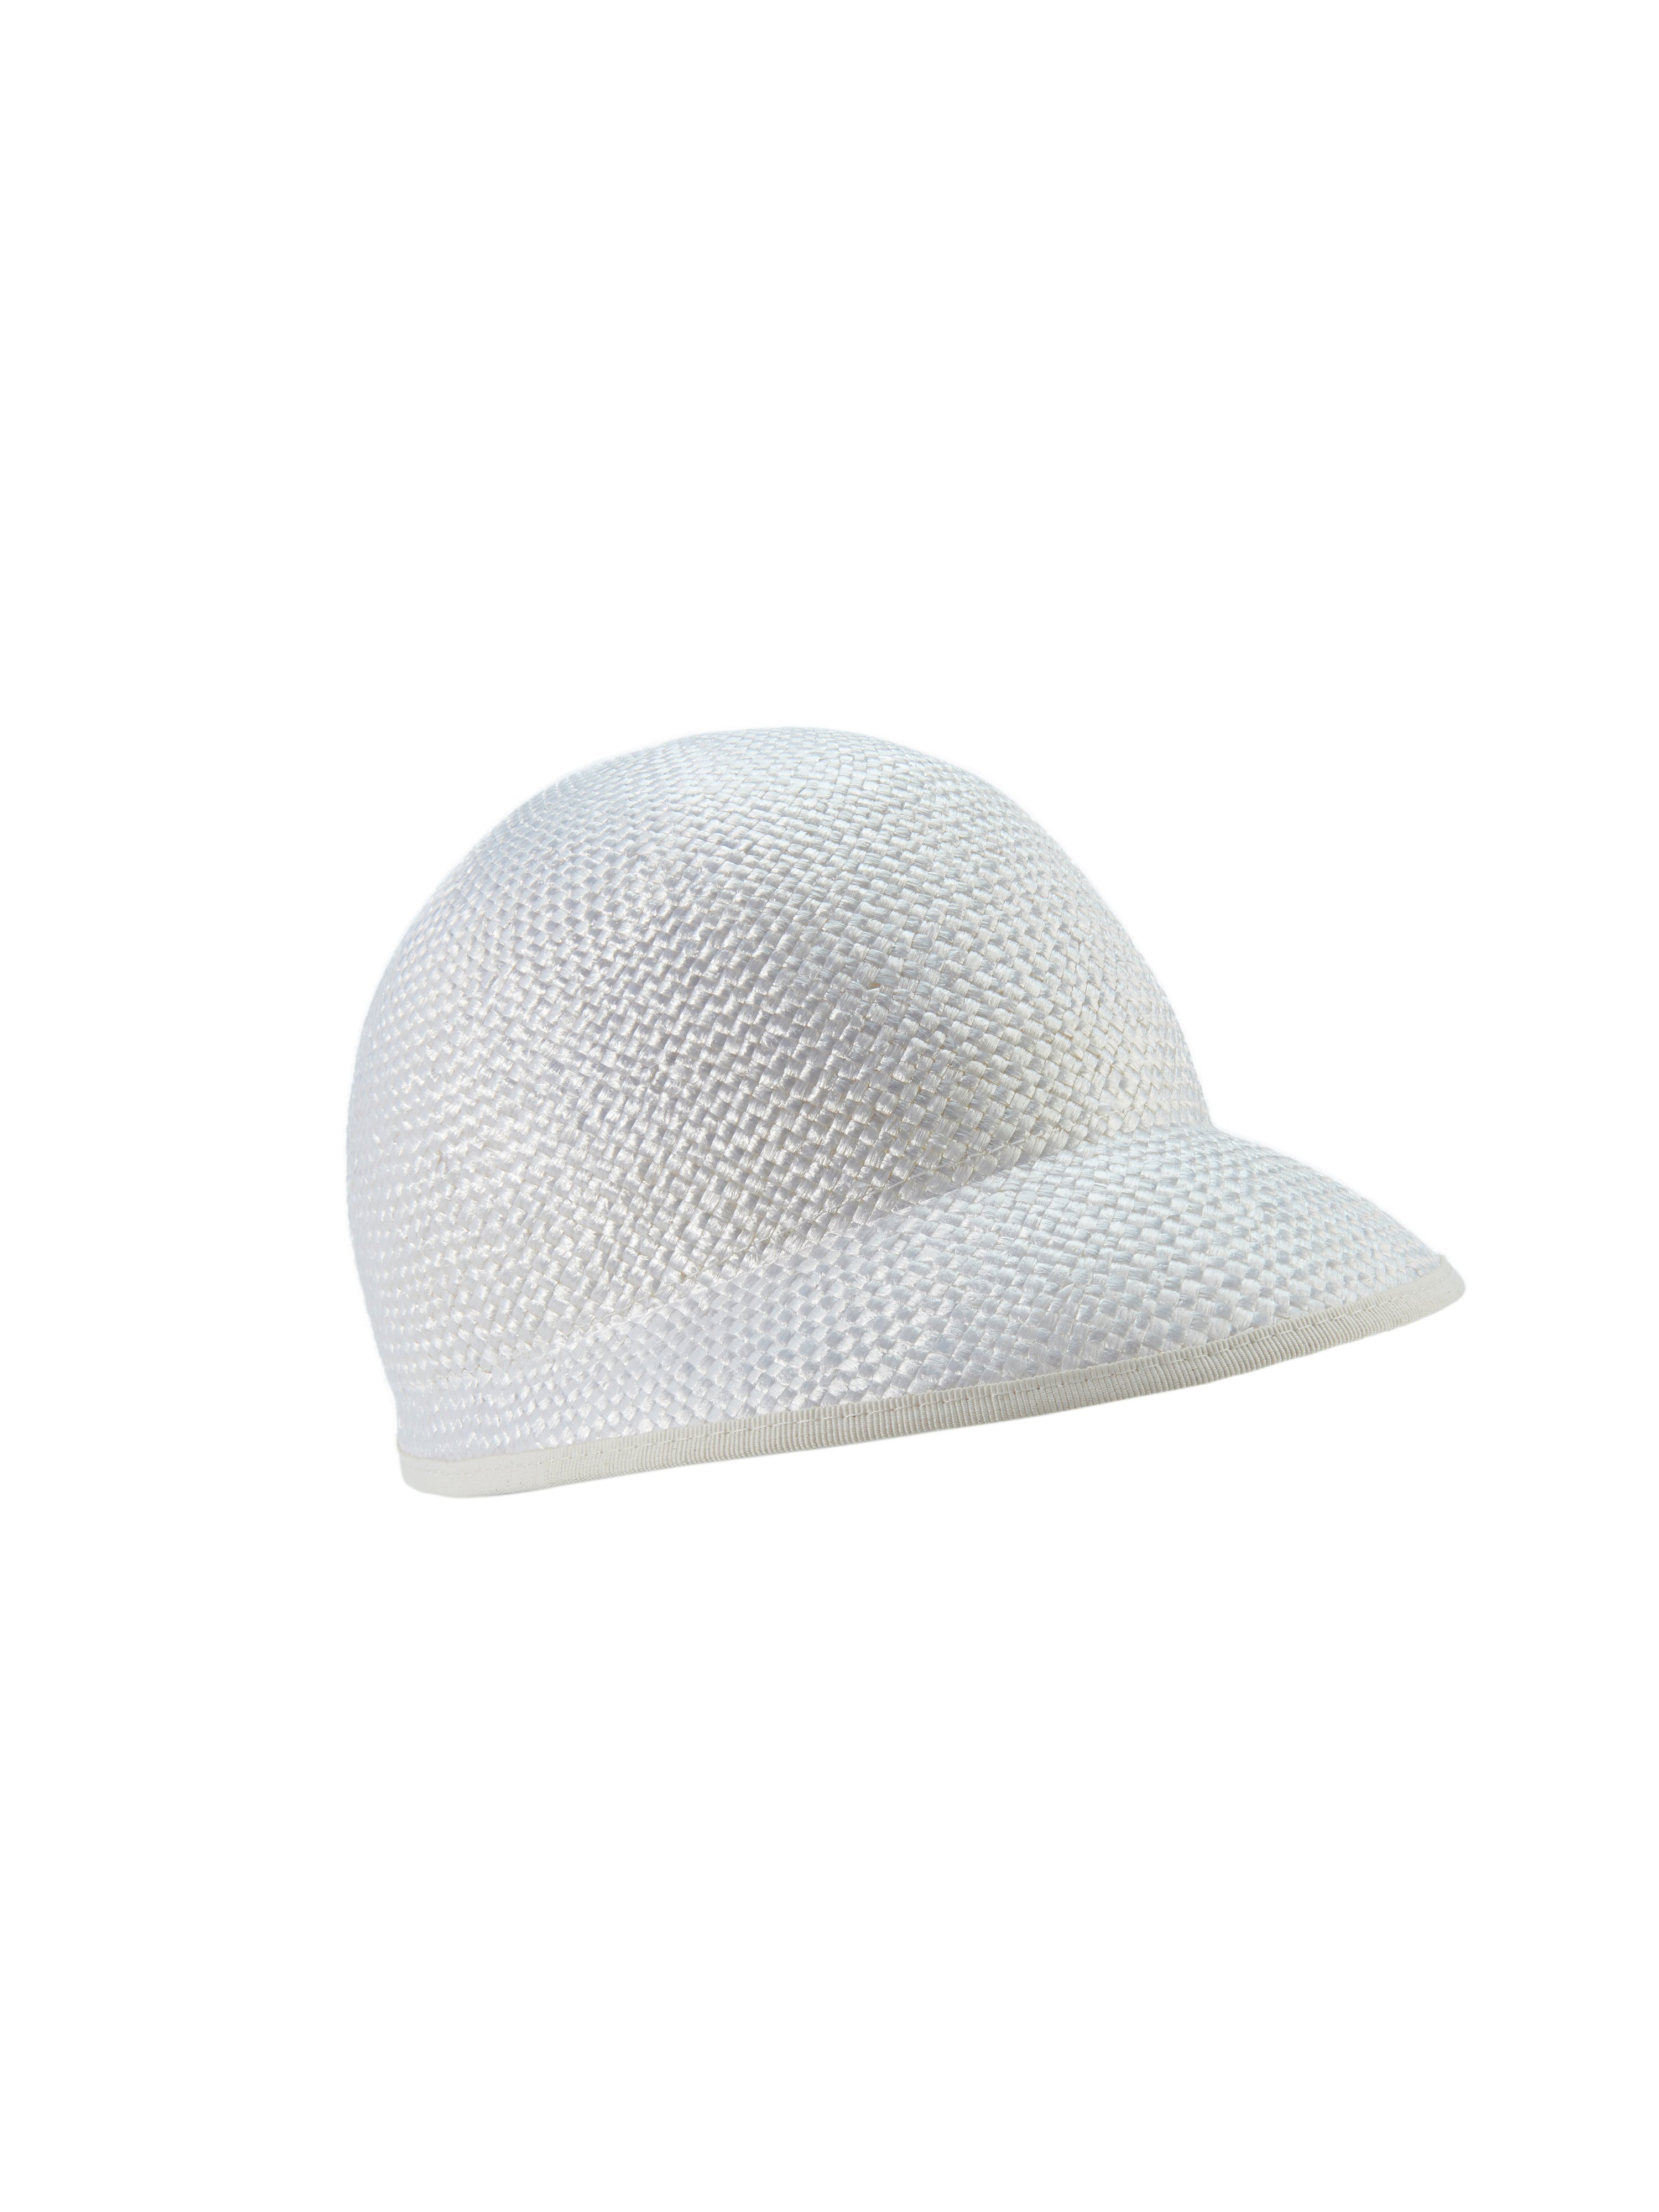 Le chapeau style estival  Roeckl blanc